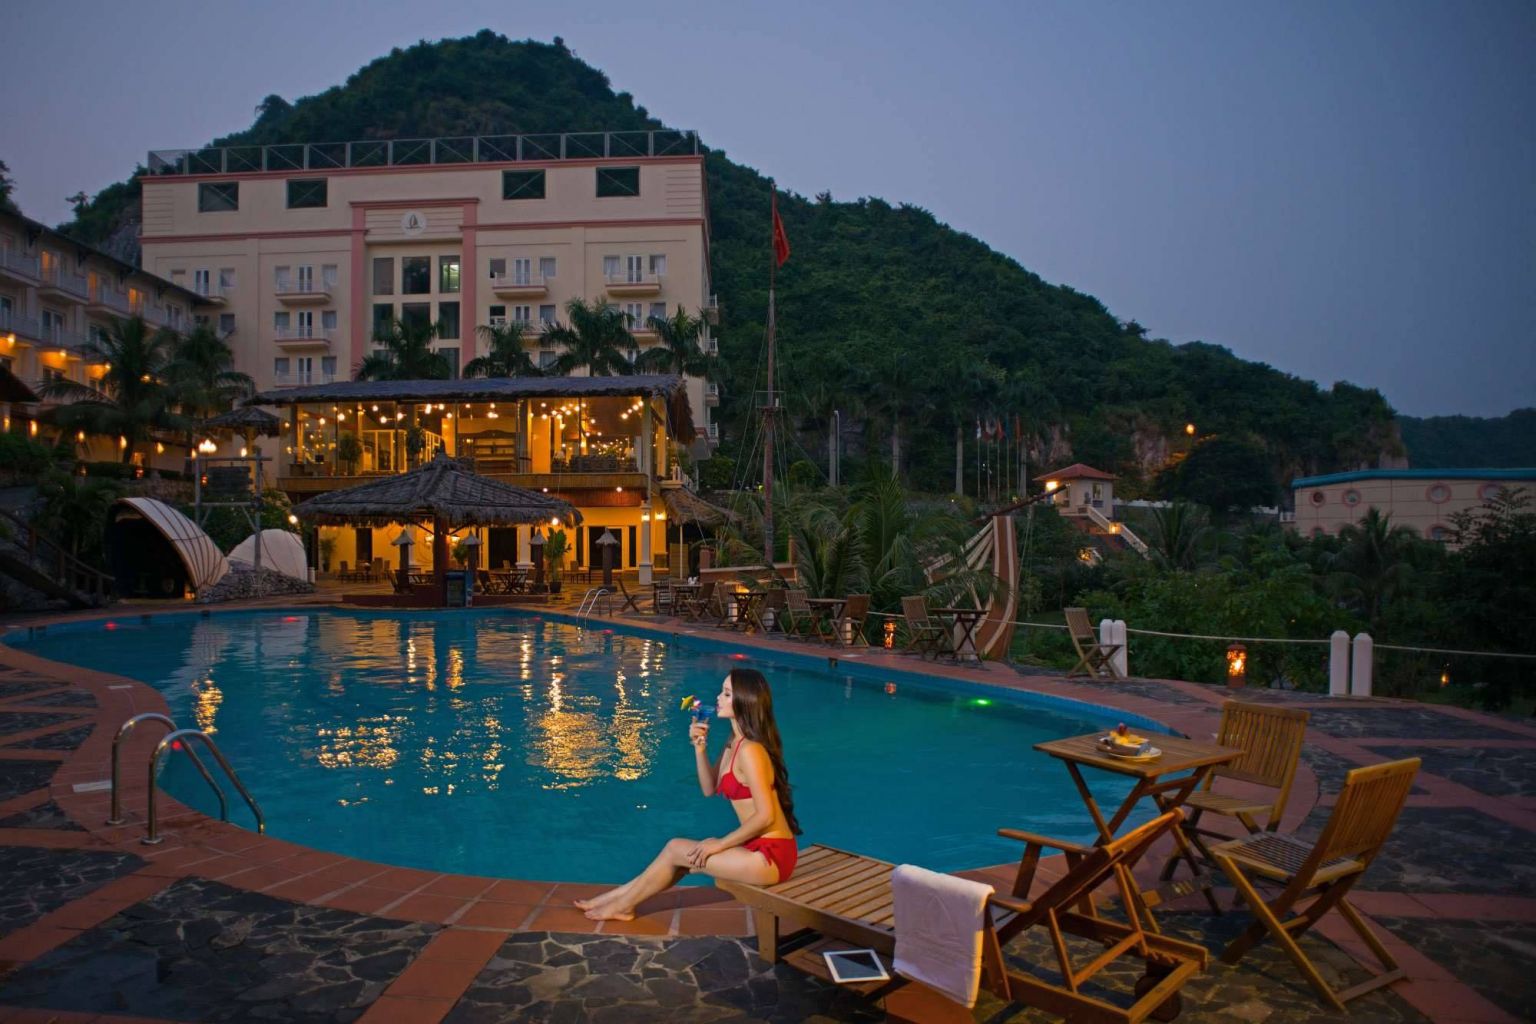 Cát Bà Island Resort & Spa là khu du lịch và nghỉ dưỡng đạt tiêu chuẩn 4 sao